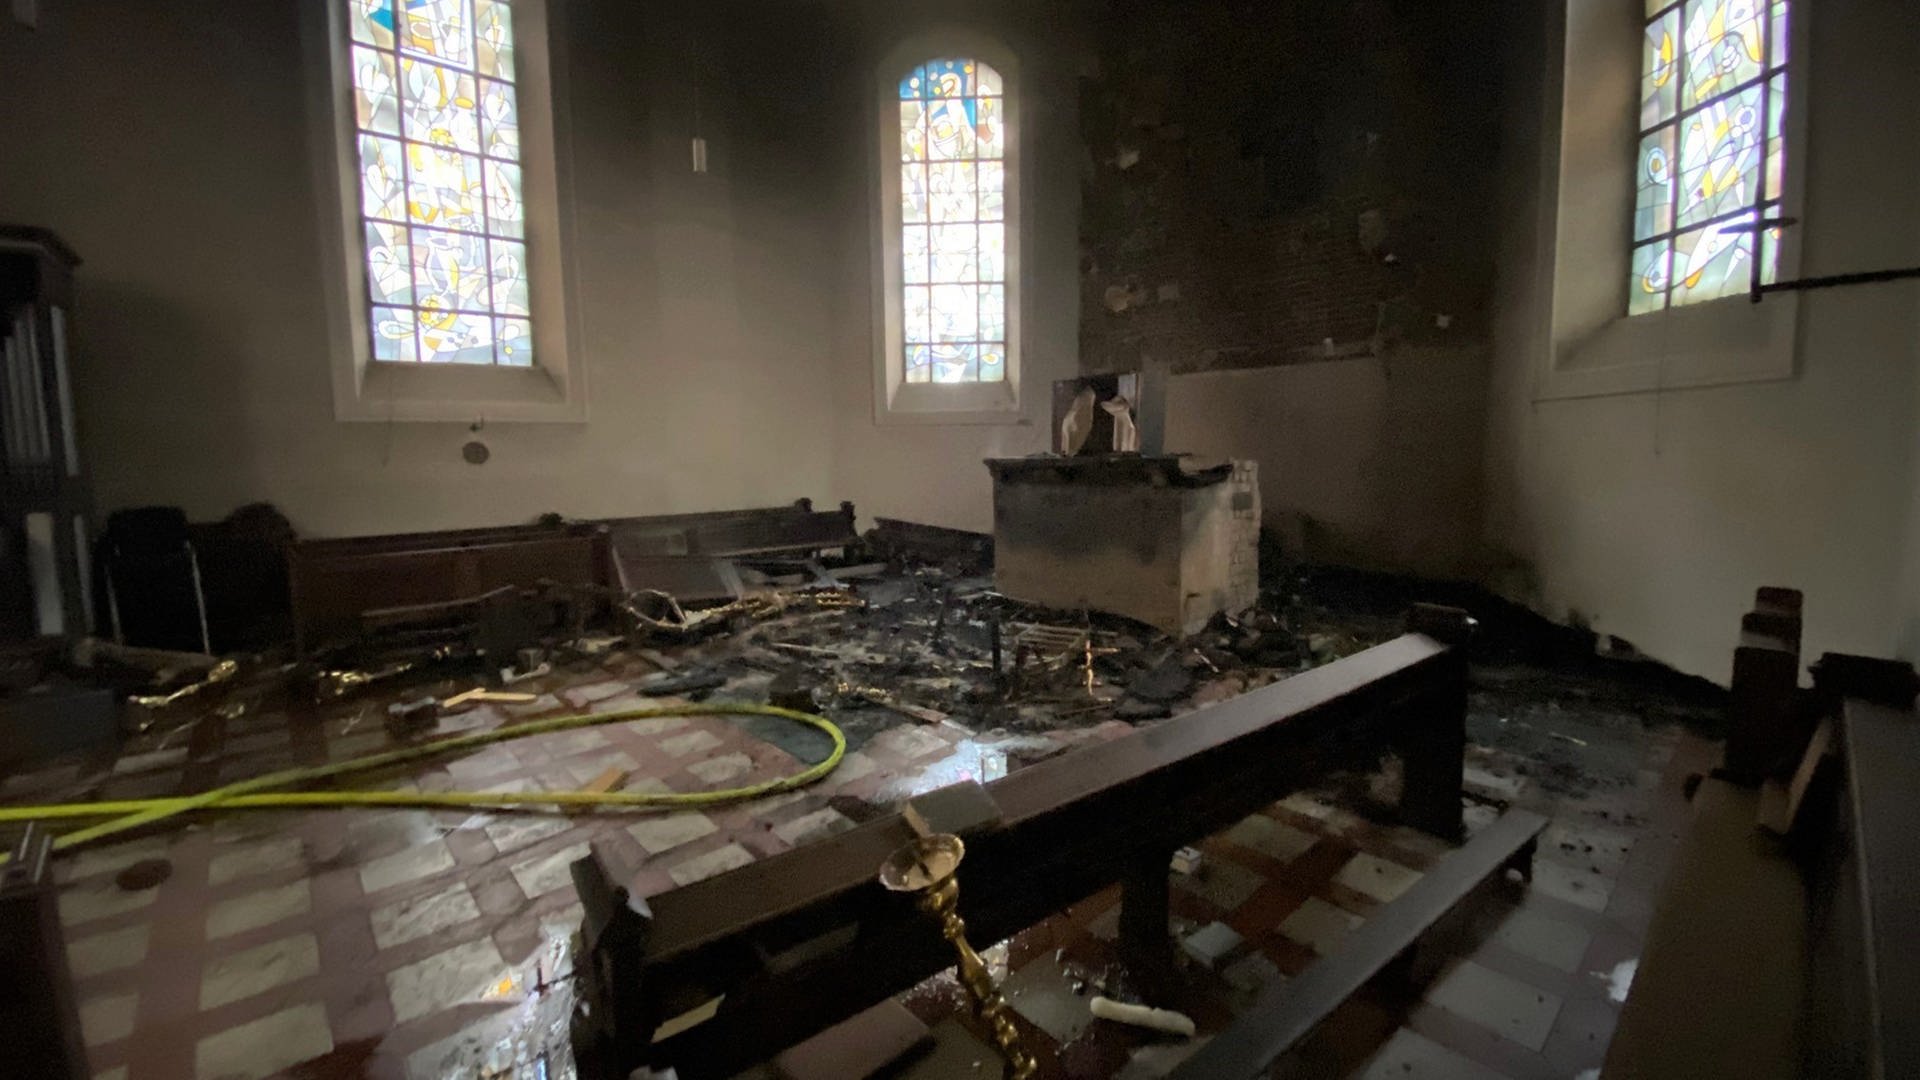 Brandstiftung in Kirche in Wissen: Schaden in Millionenhöhe befürchtet